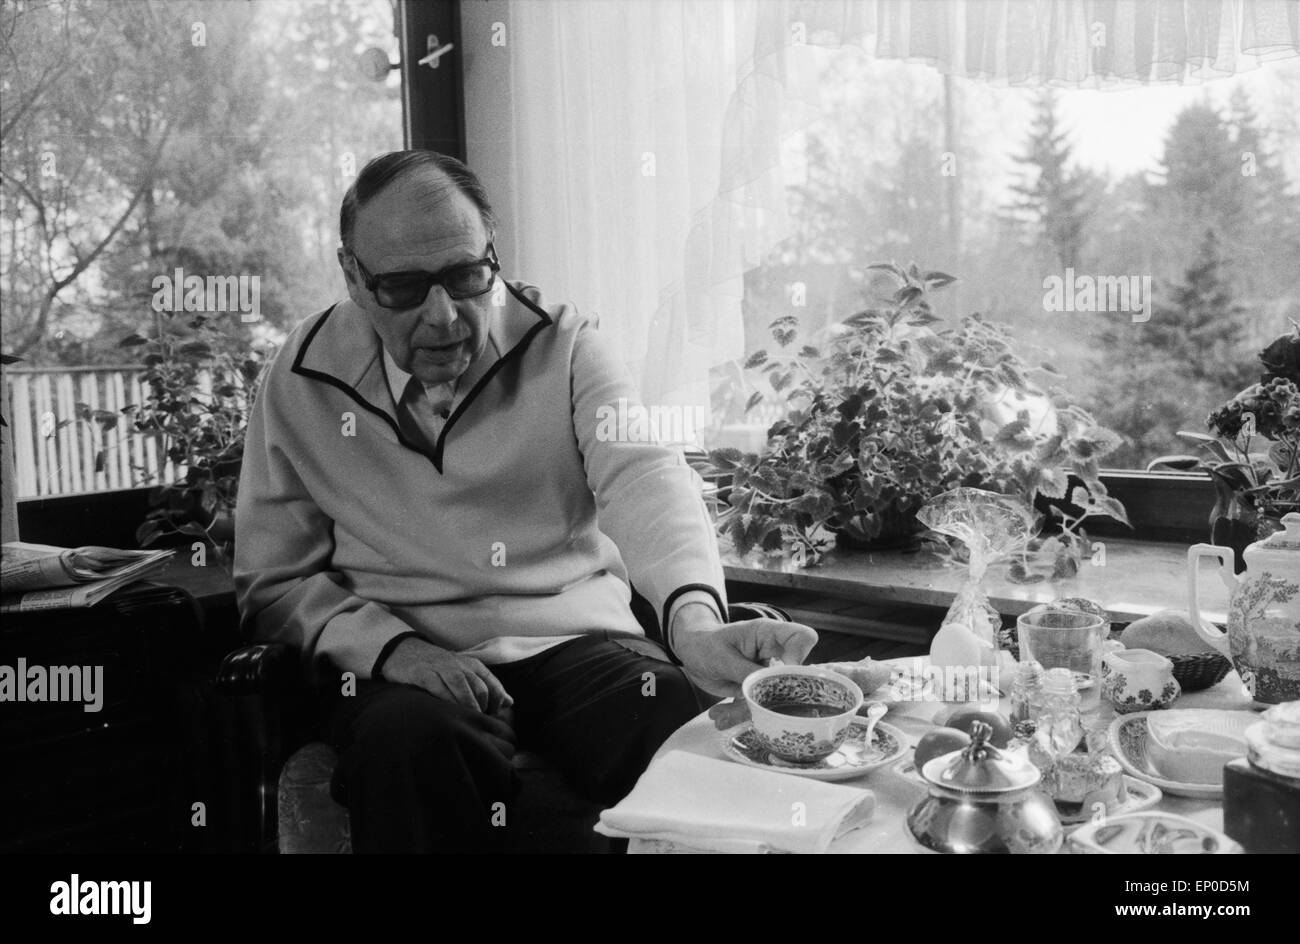 Deutscher Komiker und Wortspieler Heinz Erhardt bei einer Tasse Kaffee in seinem Haus a Amburgo, Anfang 1970er Jahre. Tedesco Foto Stock